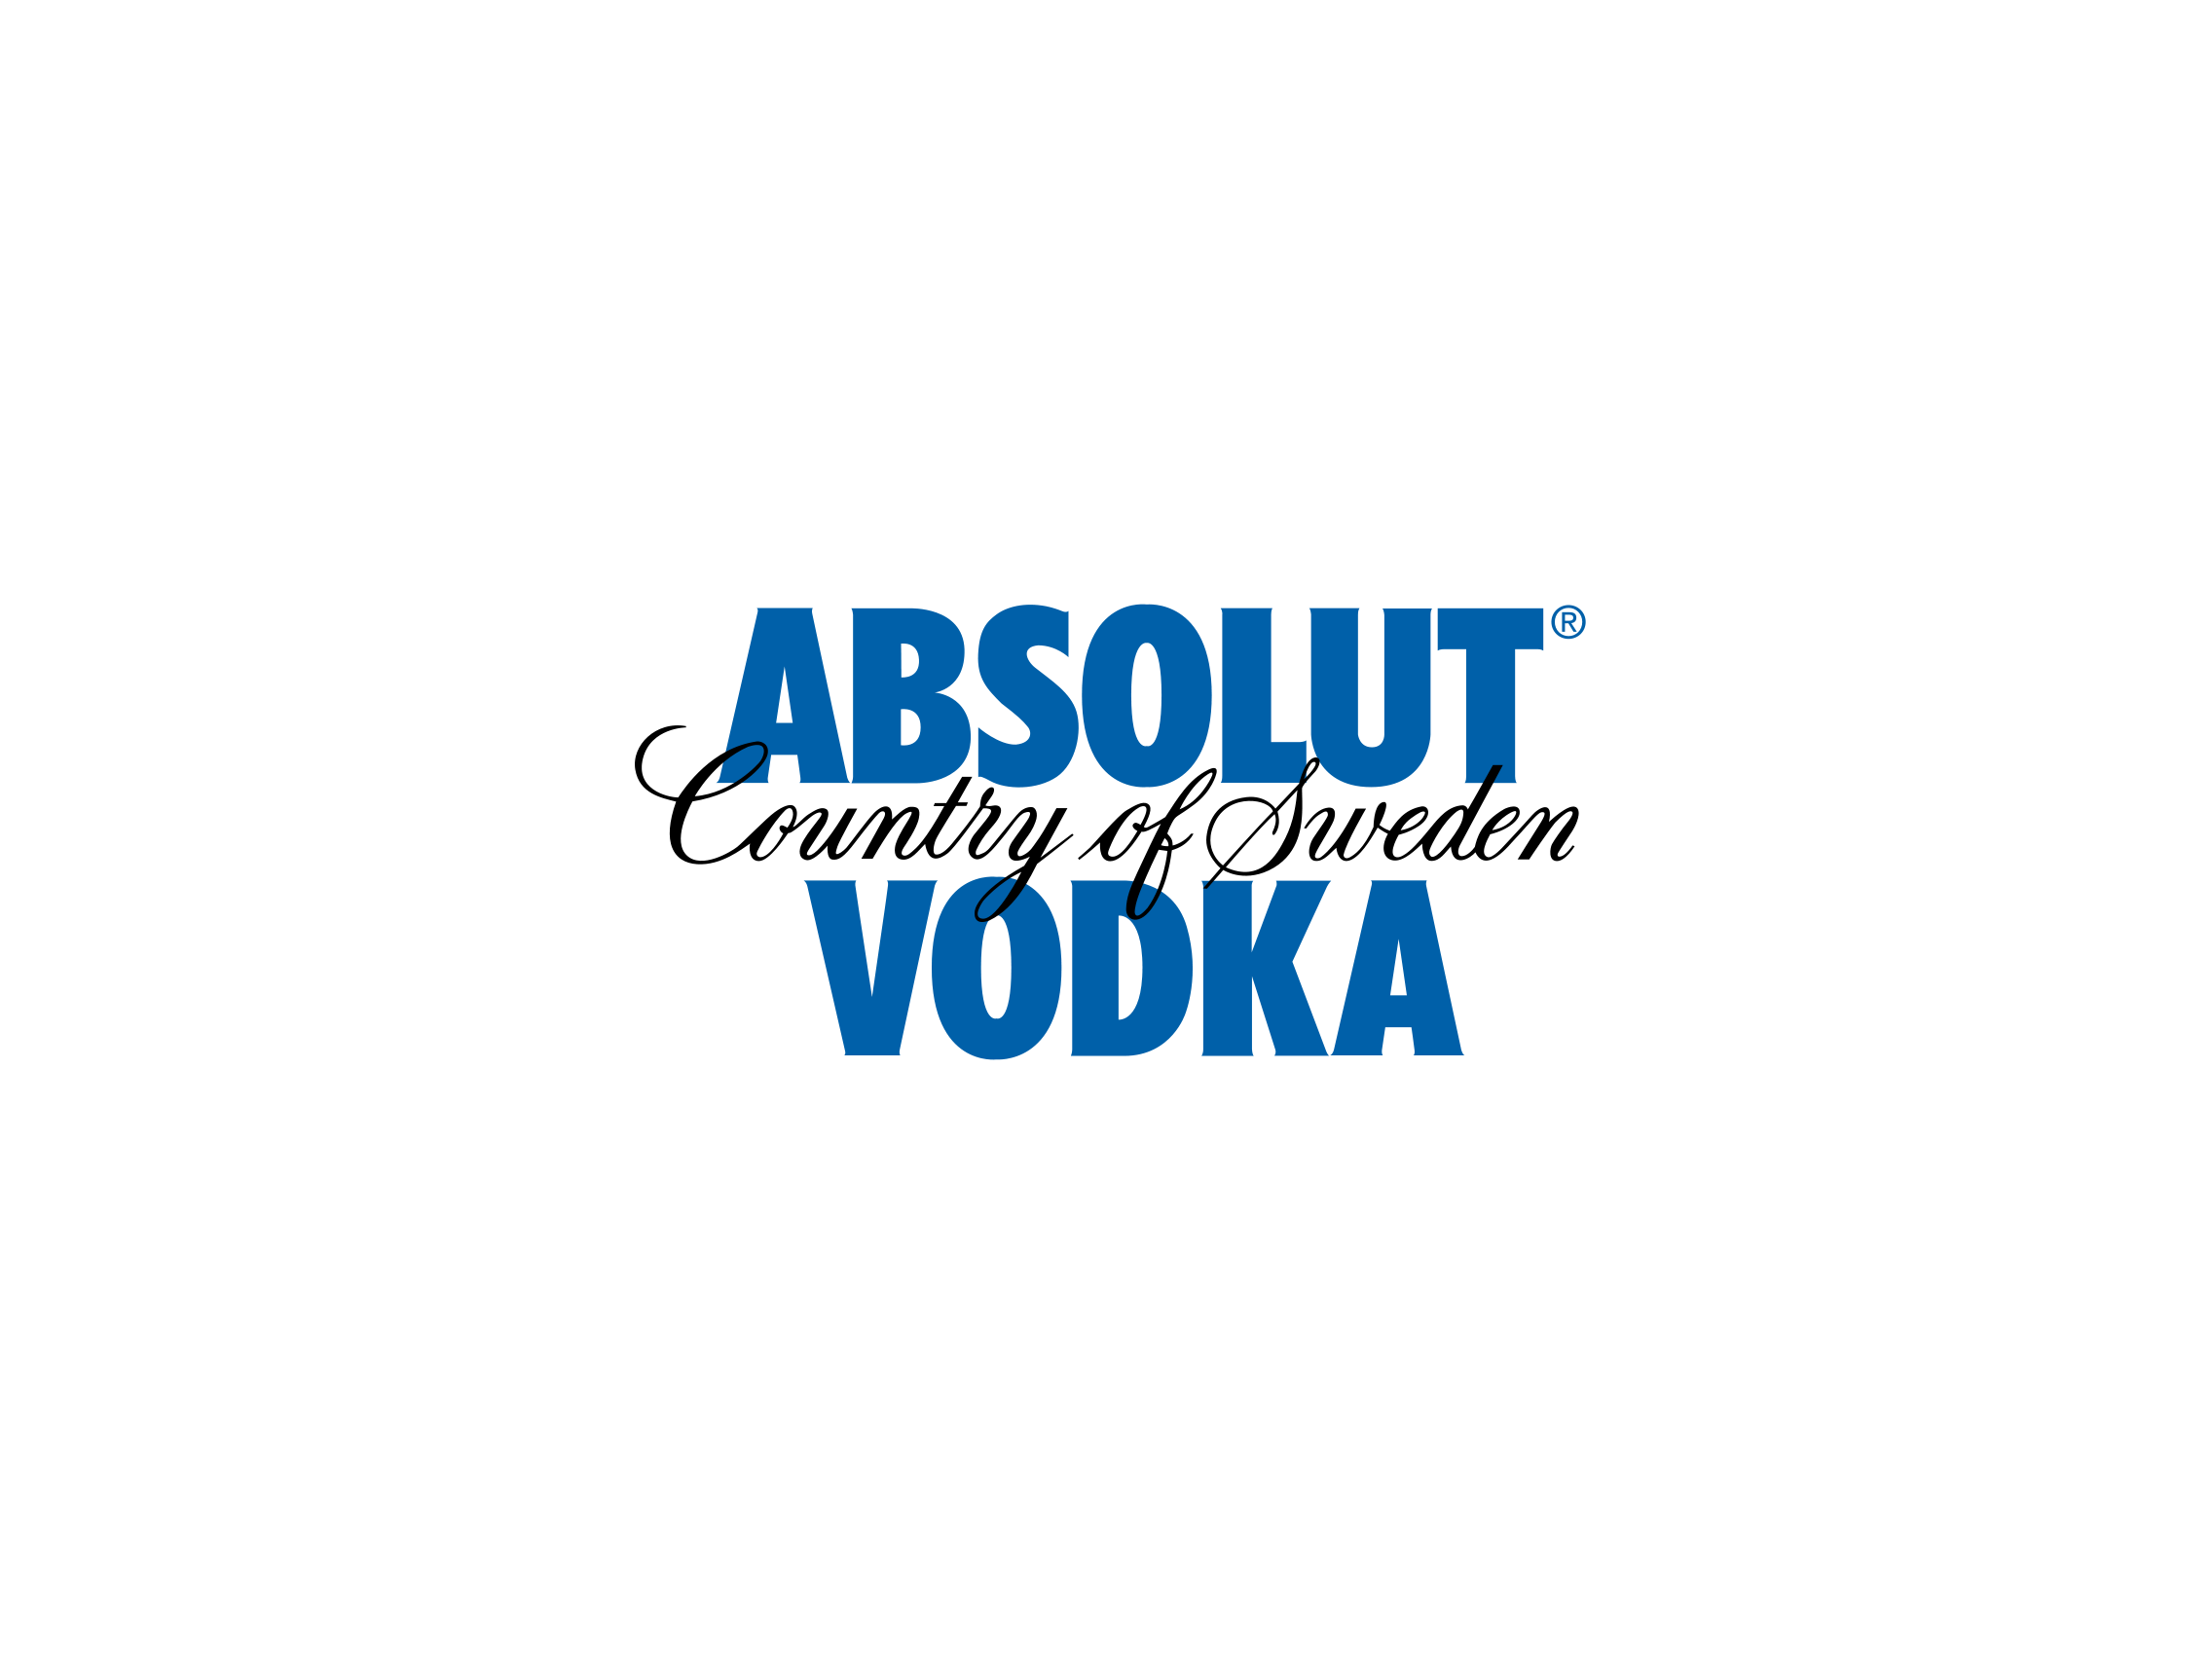 Absolut Vodka Logo Vector